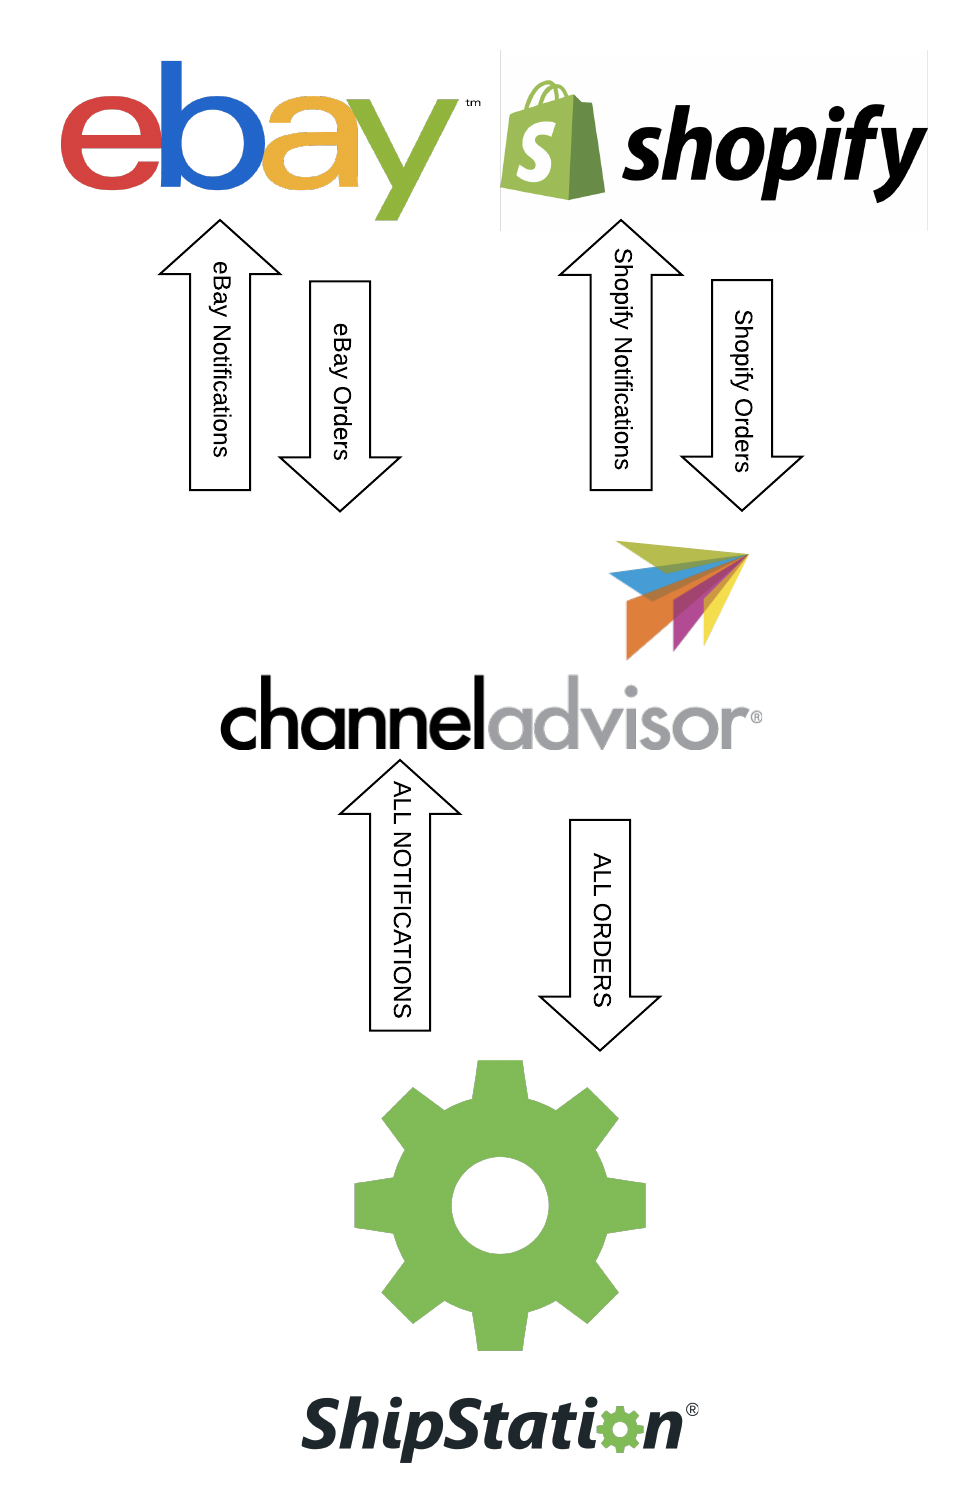 Les commandes des boutiques passent par ChannelAdvisor, ensuite par ShipStation. Les notifications sont renvoyées à Channel Advisor, ensuite aux boutiques.